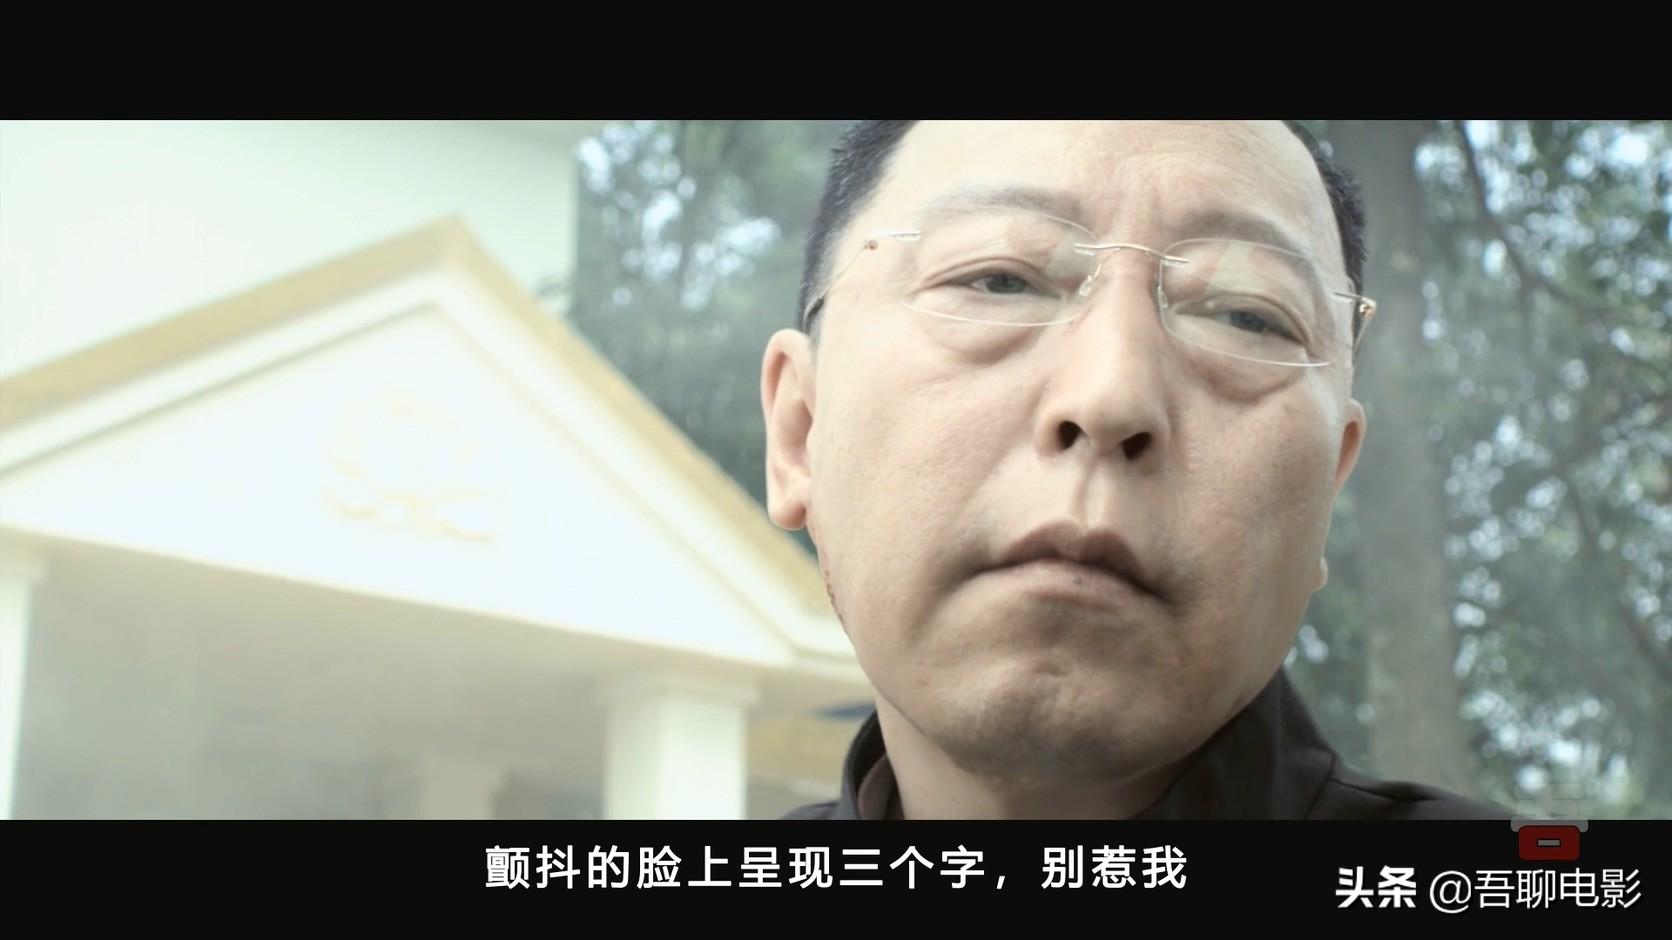 吴京再度燃爆院线，回顾他首部影片《战狼》（2、 将命题:“福州电影院从3月到5月一直在播放电影《战狼2》”用语义网络表示）